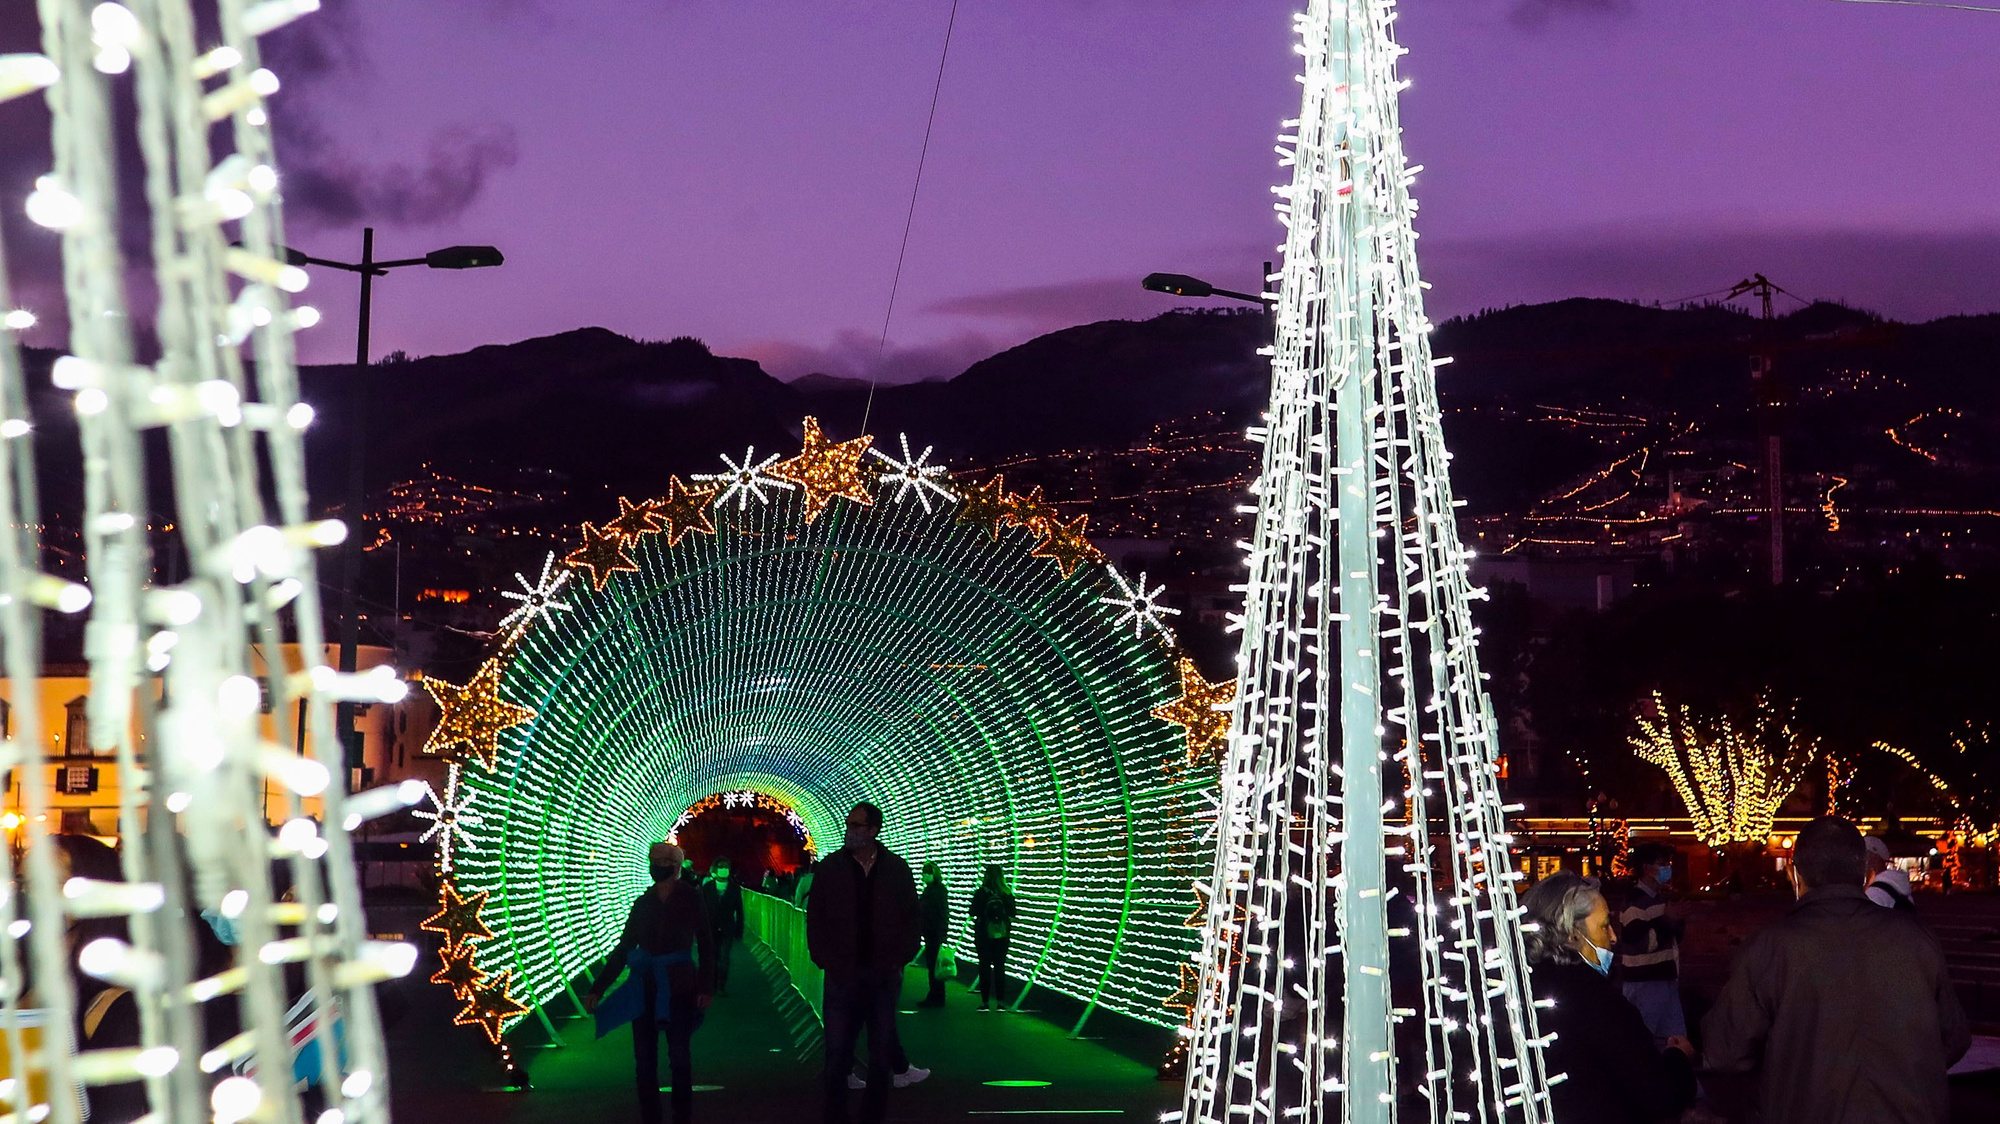 O túnel de luz instalado no cais do Funchal e programado para produzir espetáculos de música e efeitos visuais, é a grande atração das iluminações de Natal este ano na capital madeirense, atraindo todos os dias milhares de pessoas, Funchal, 9 de dezembro de 2020. As iluminações da quadra festiva no centro e arredores do Funchal foram ligadas a 01 de dezembro e vão colorir as noites até 11 de janeiro de 2021, mantendo viva a tradição, apesar da pandemia de covid-19. HOMEM DE GOUVEIA/LUSA